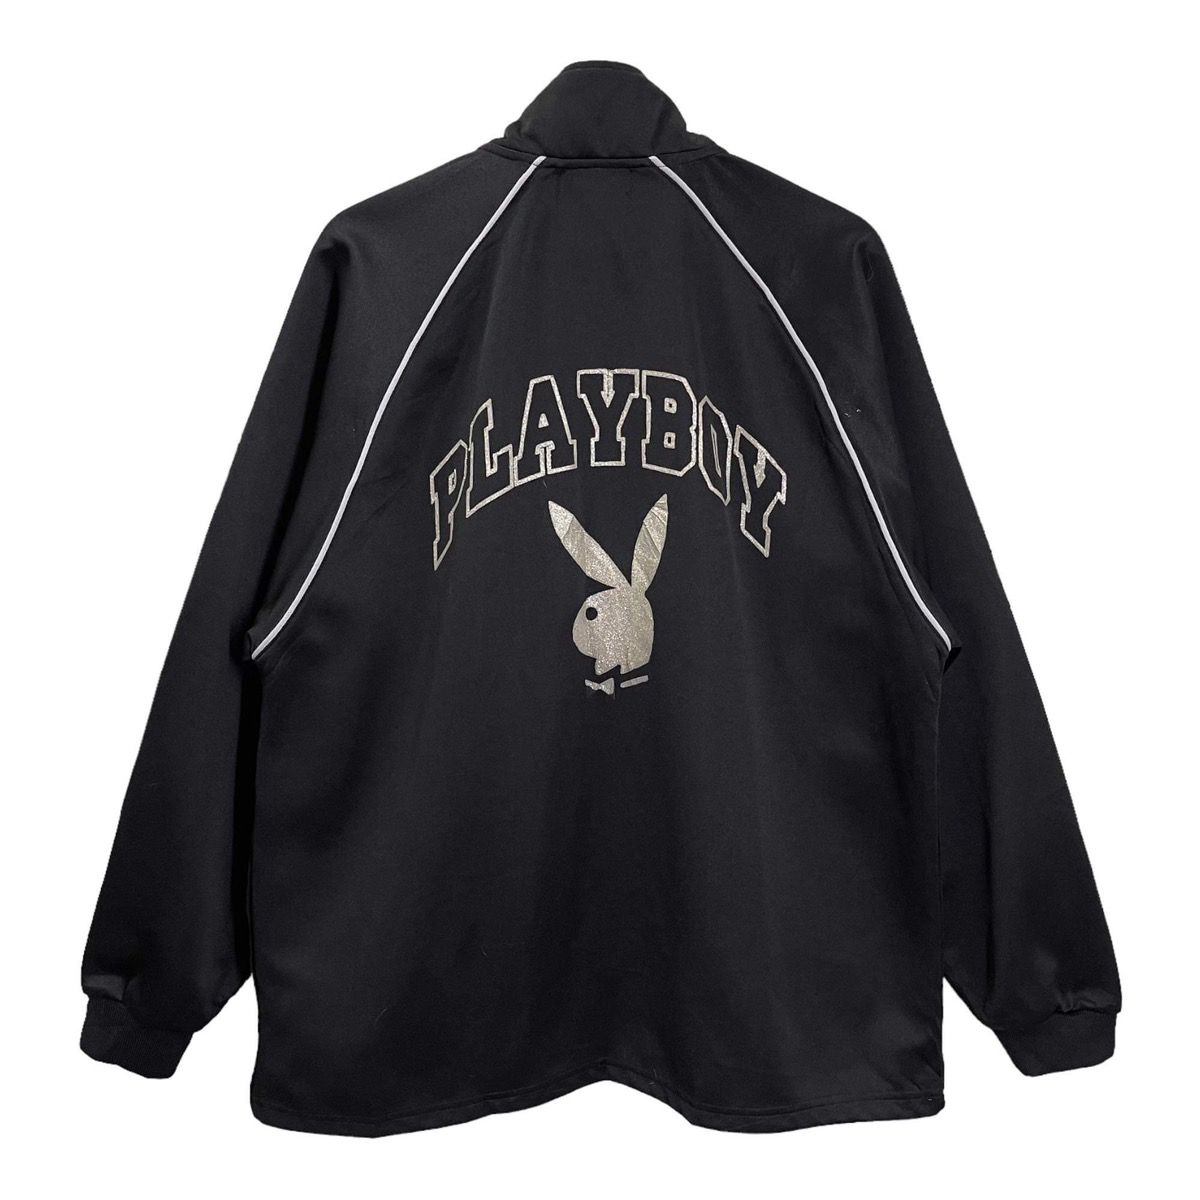 Vintage - Playboys Big Logo Jacket Size L - 1